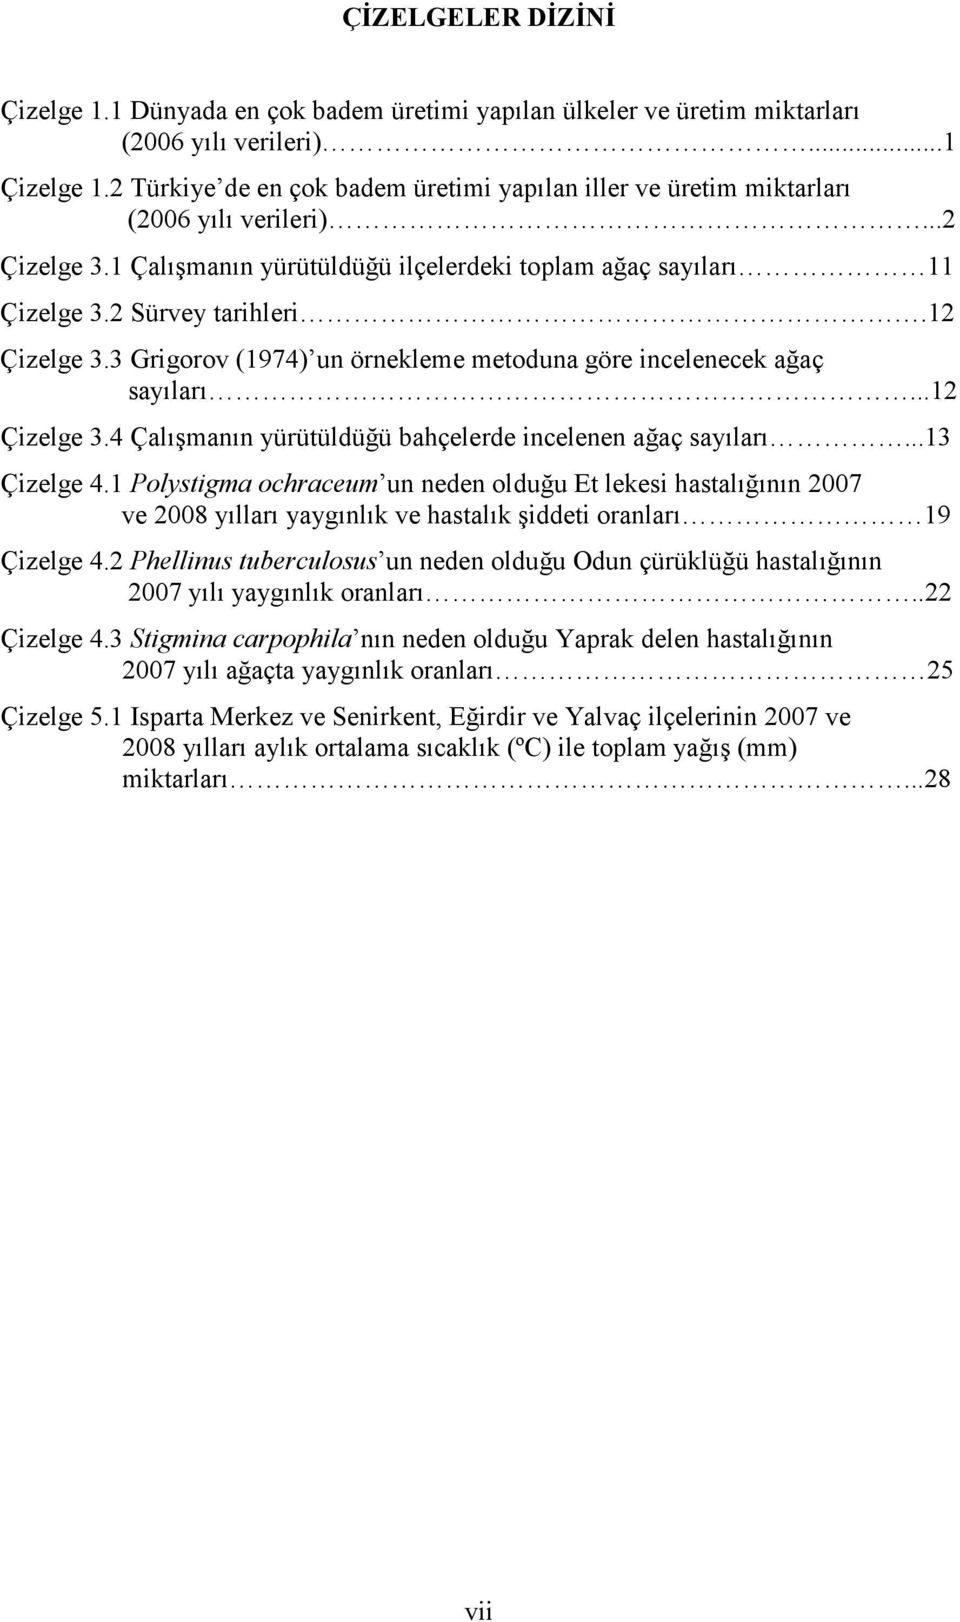 12 Çizelge 3.3 Grigorov (1974) un örnekleme metoduna göre incelenecek ağaç sayıları...12 Çizelge 3.4 Çalışmanın yürütüldüğü bahçelerde incelenen ağaç sayıları...13 Çizelge 4.